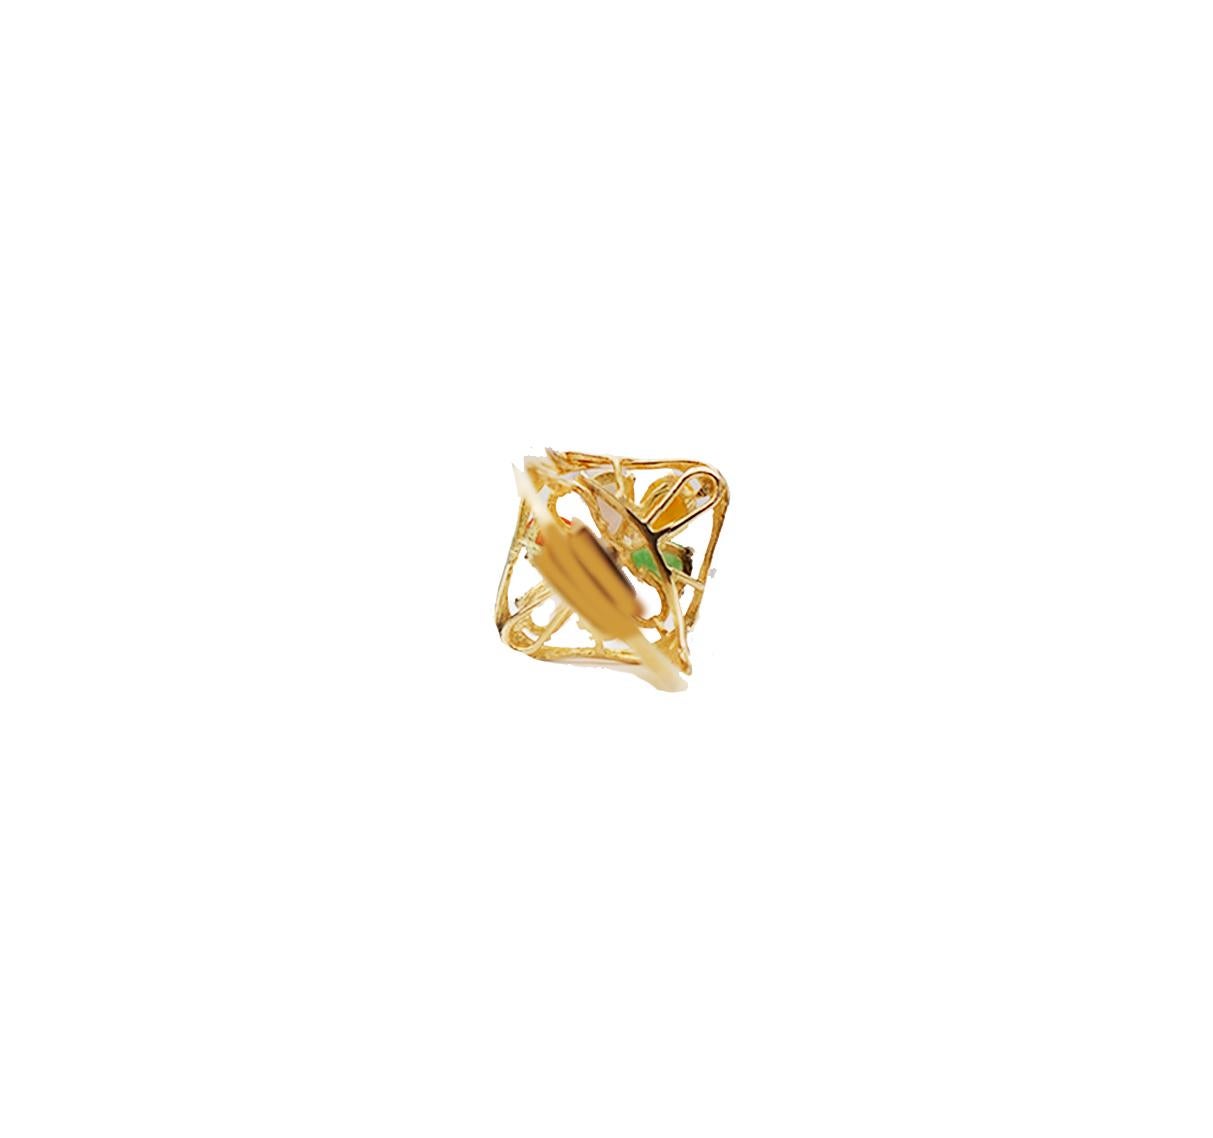 yellow jade ring